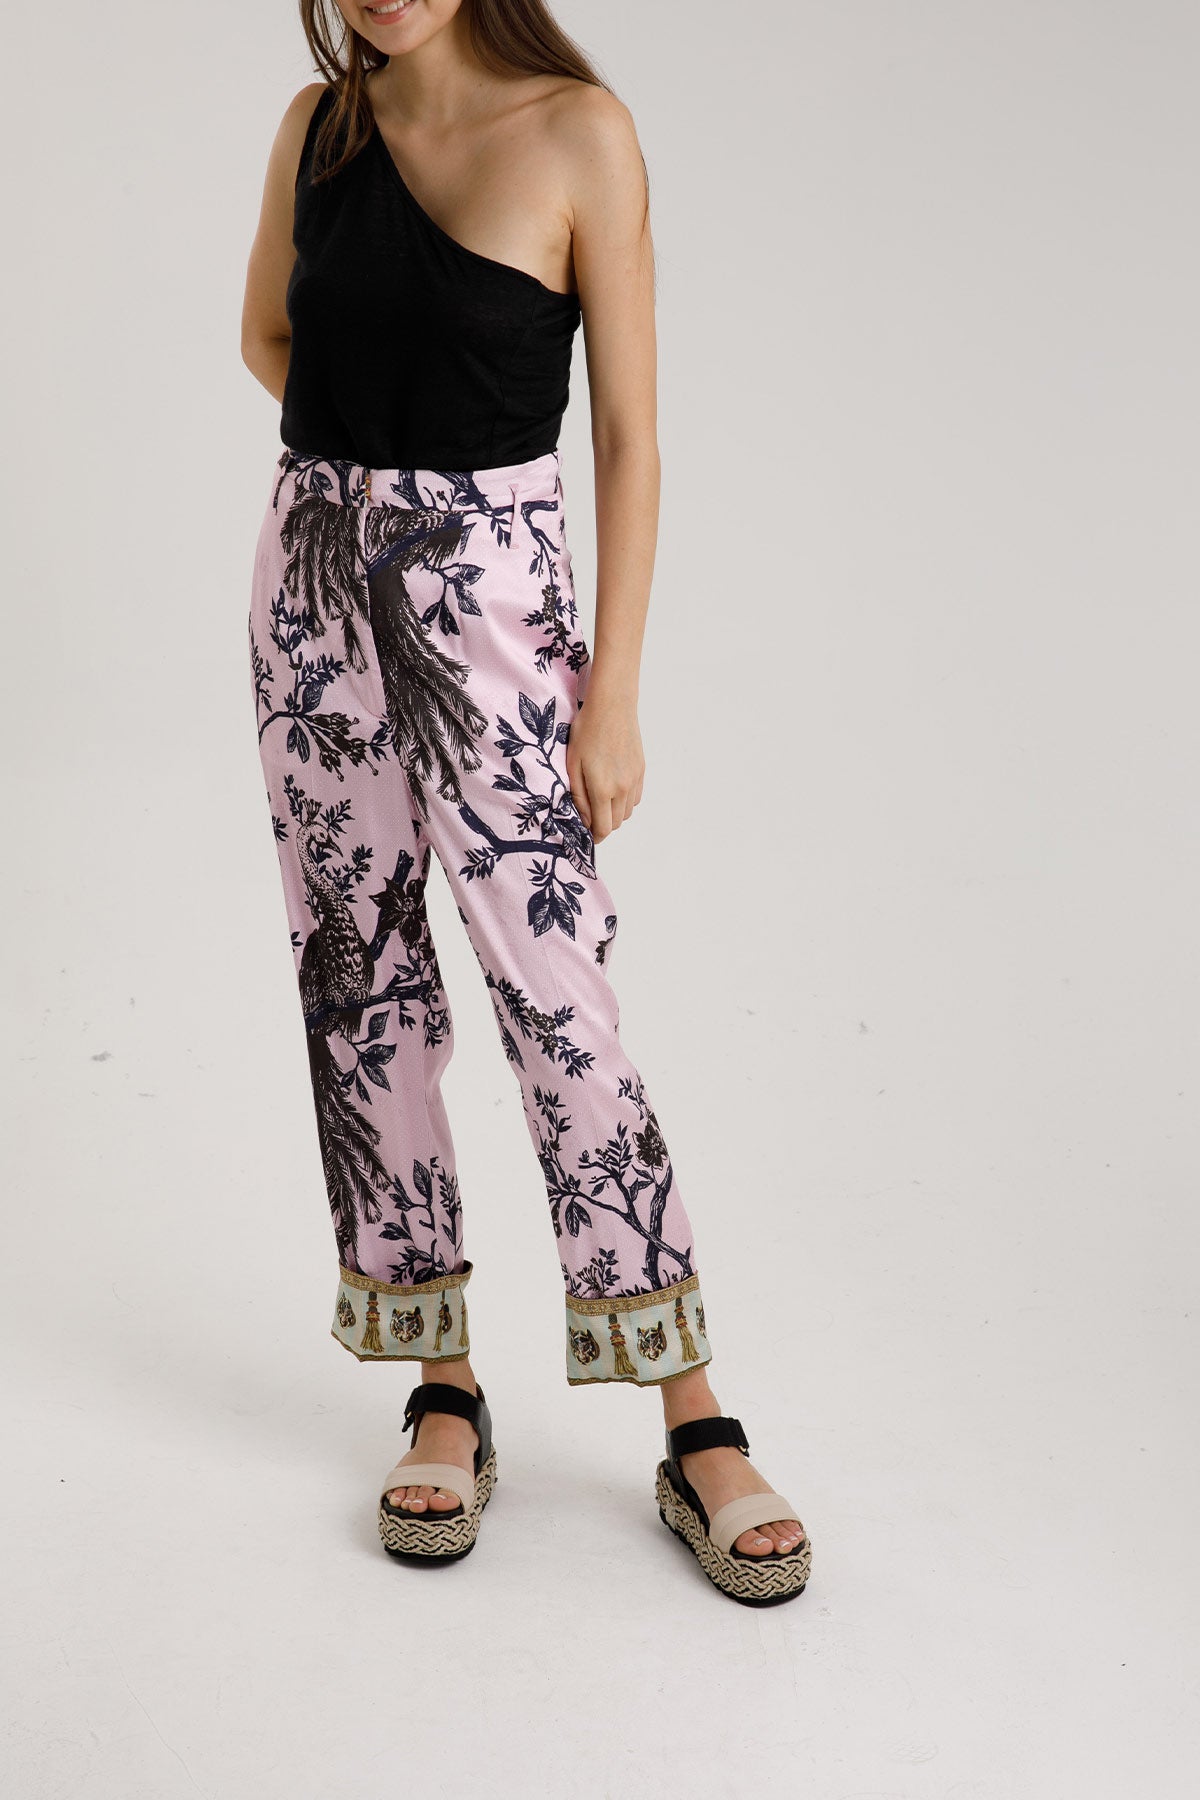 Replay Desenli Pantolon-Libas Trendy Fashion Store